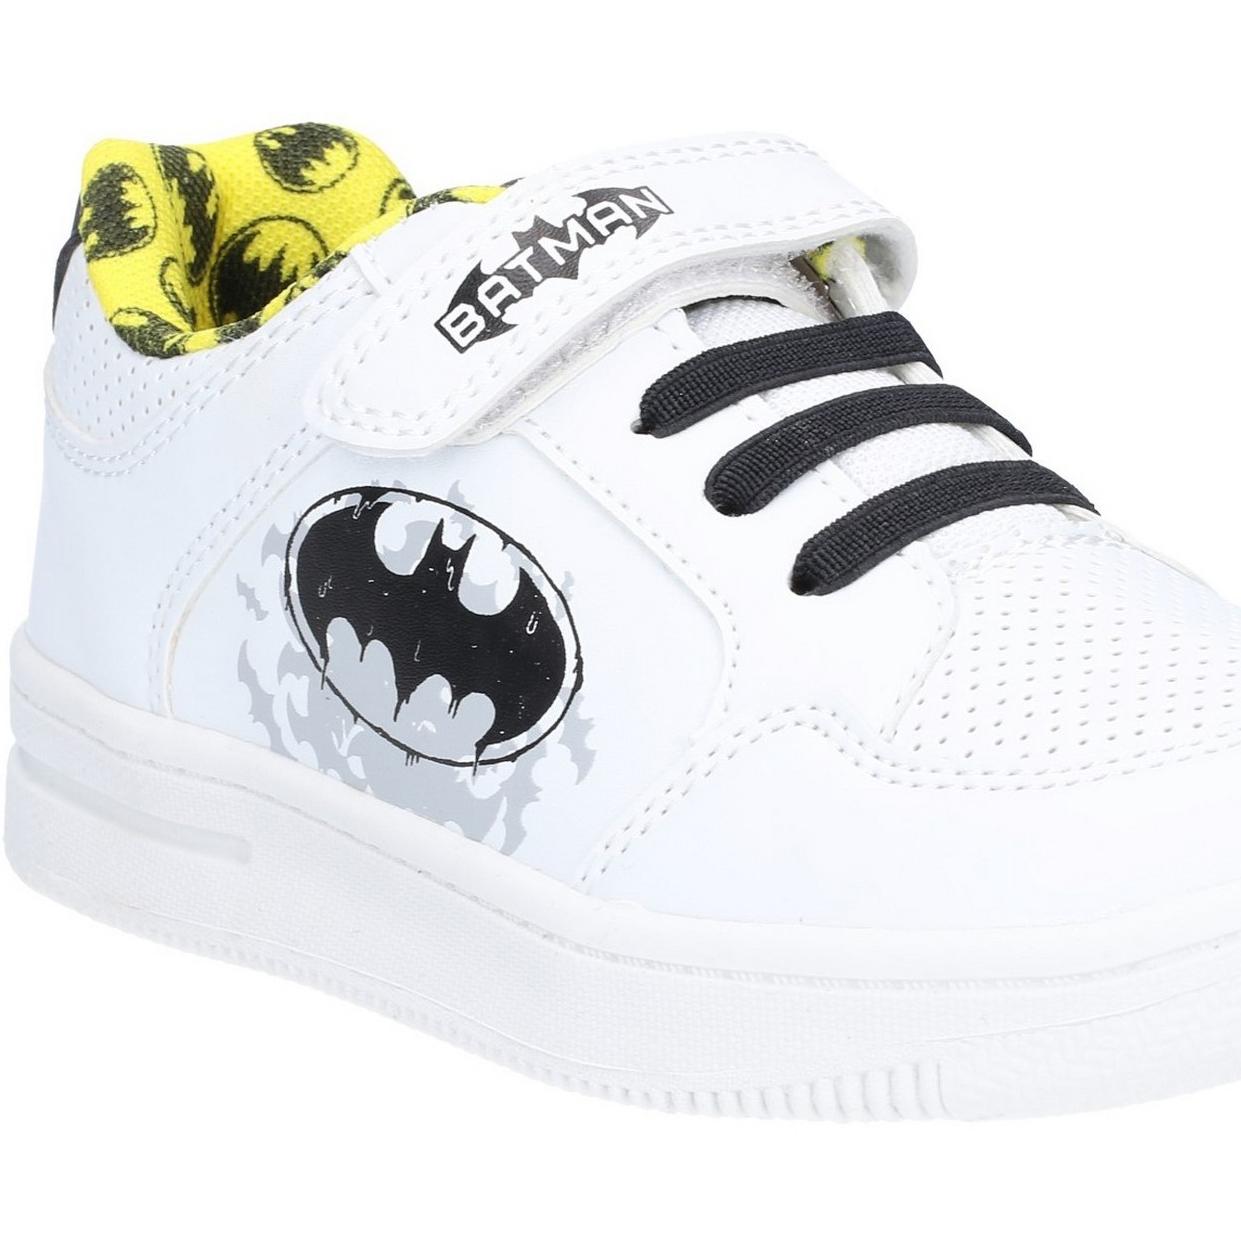 Leomil Batman Low Sneakers touch fastening shoe